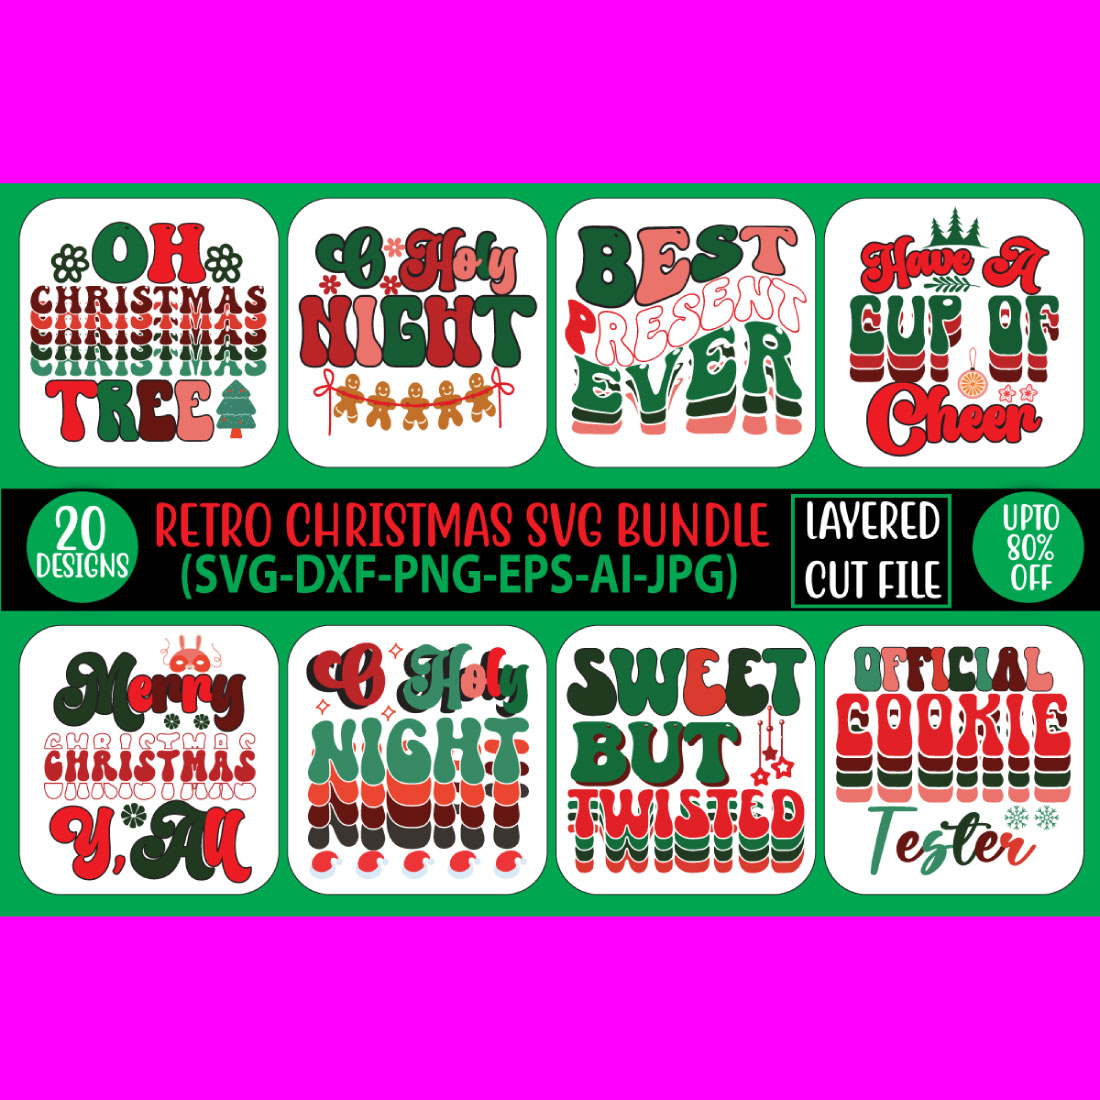 Retro Christmas SVG Bundle main cover.